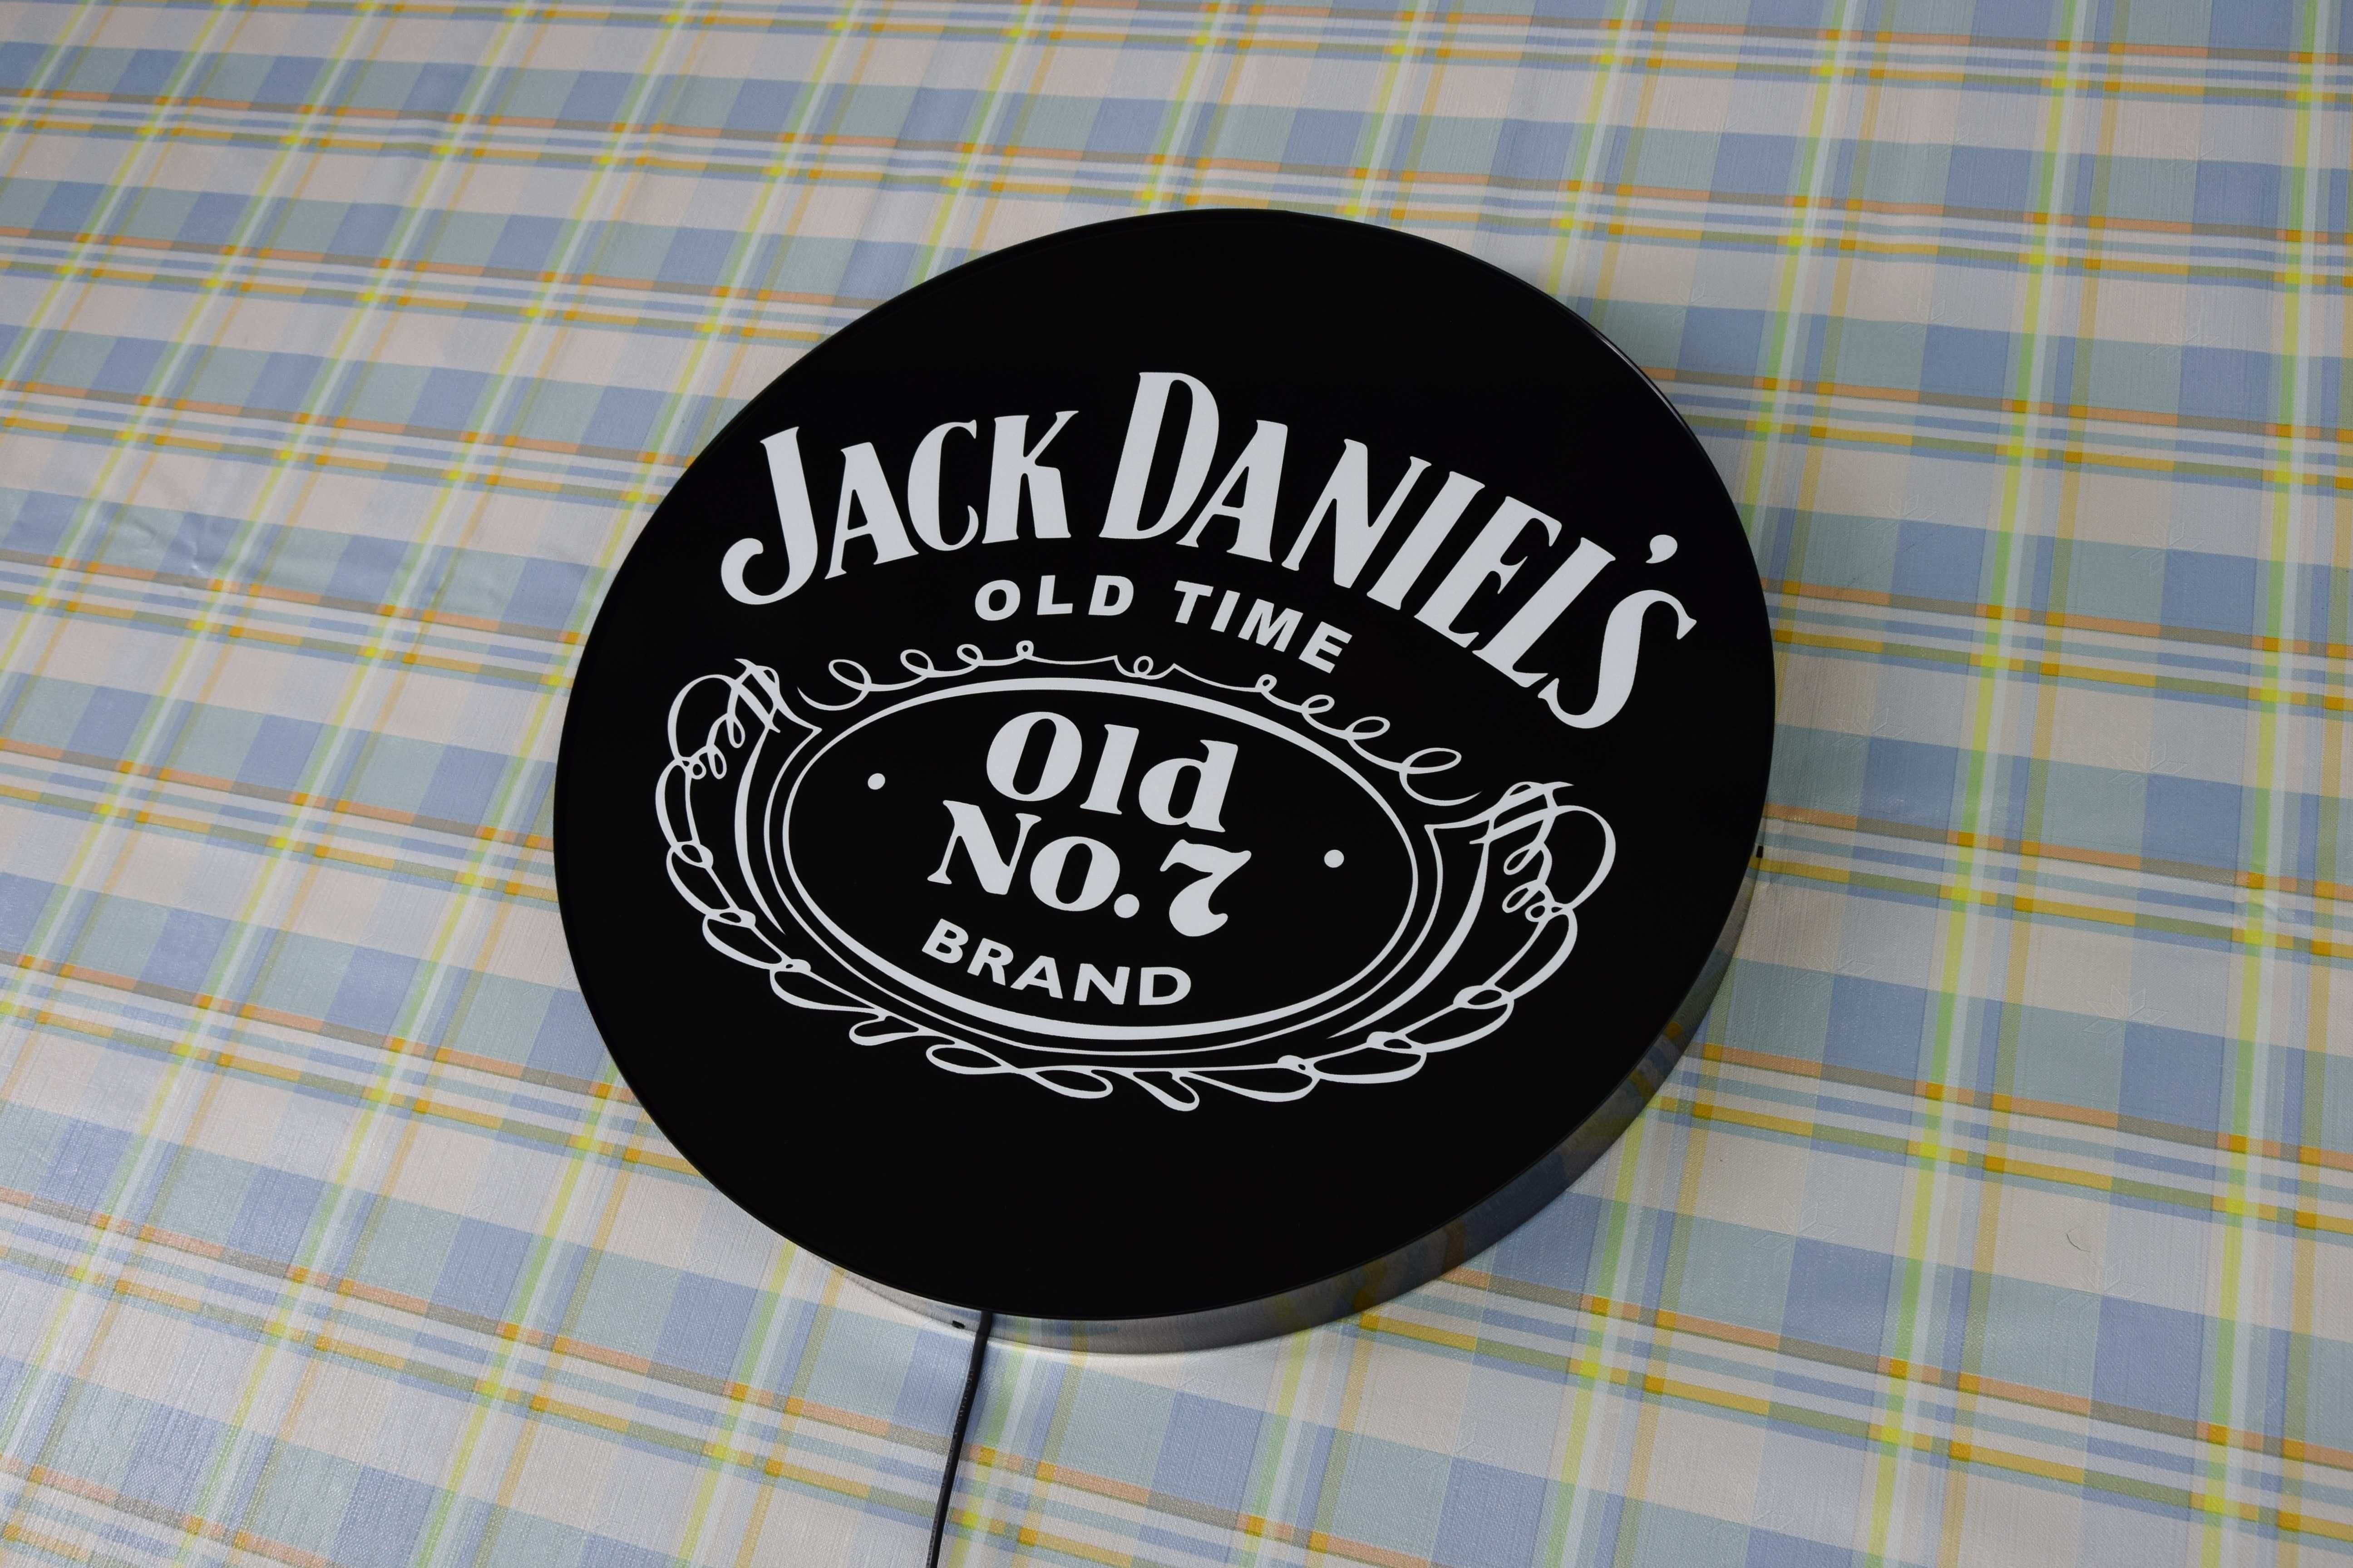 Podświetlane logo JACK DANIELS, Reklama LED, NEON, Szyld, Prezent